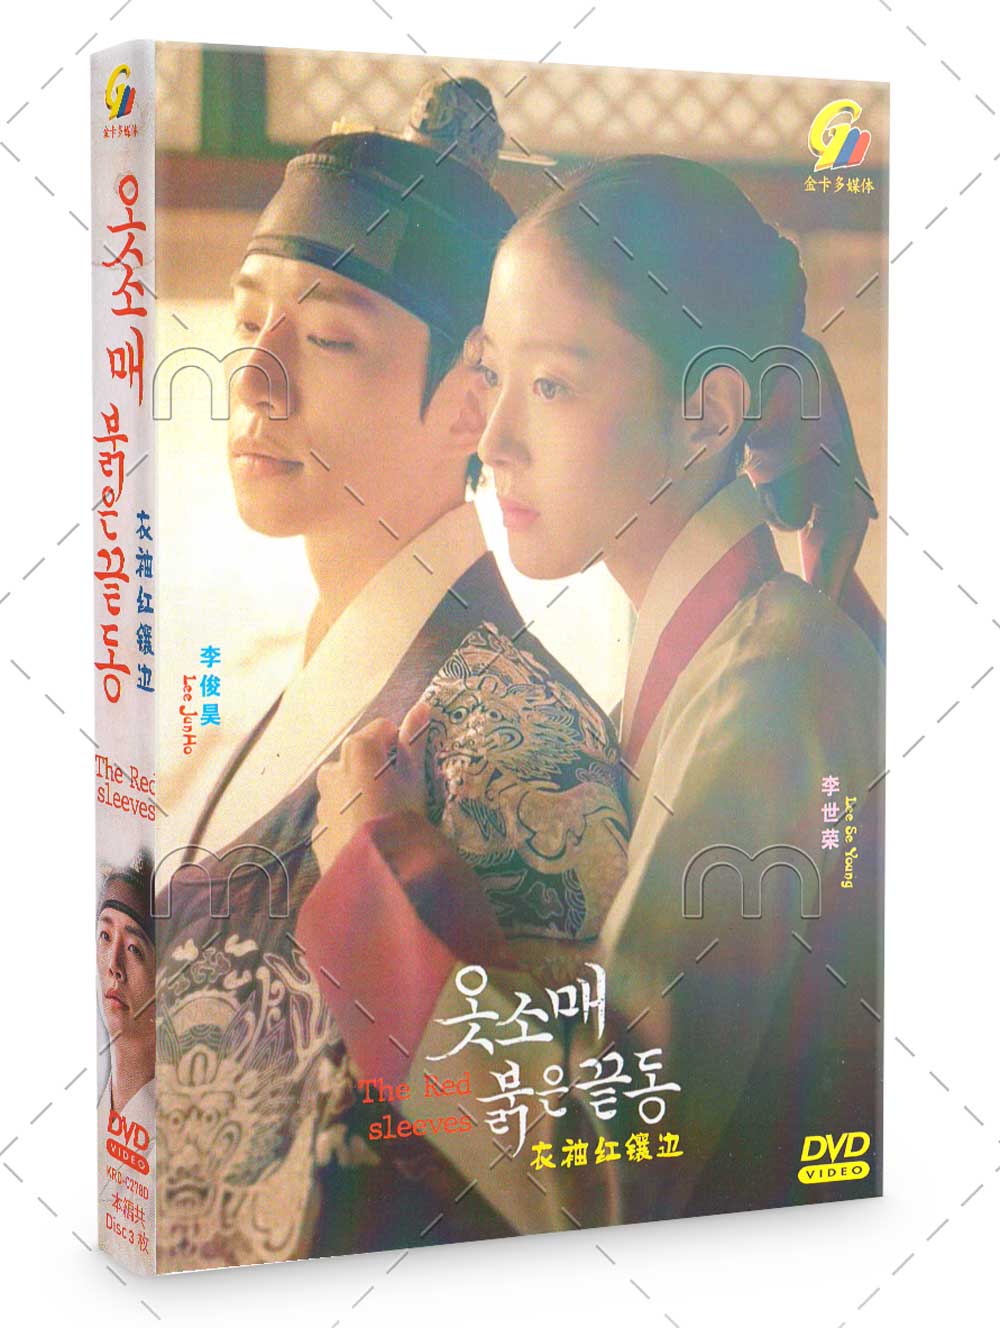 衣袖红镶边 (DVD) (2021) 韩剧